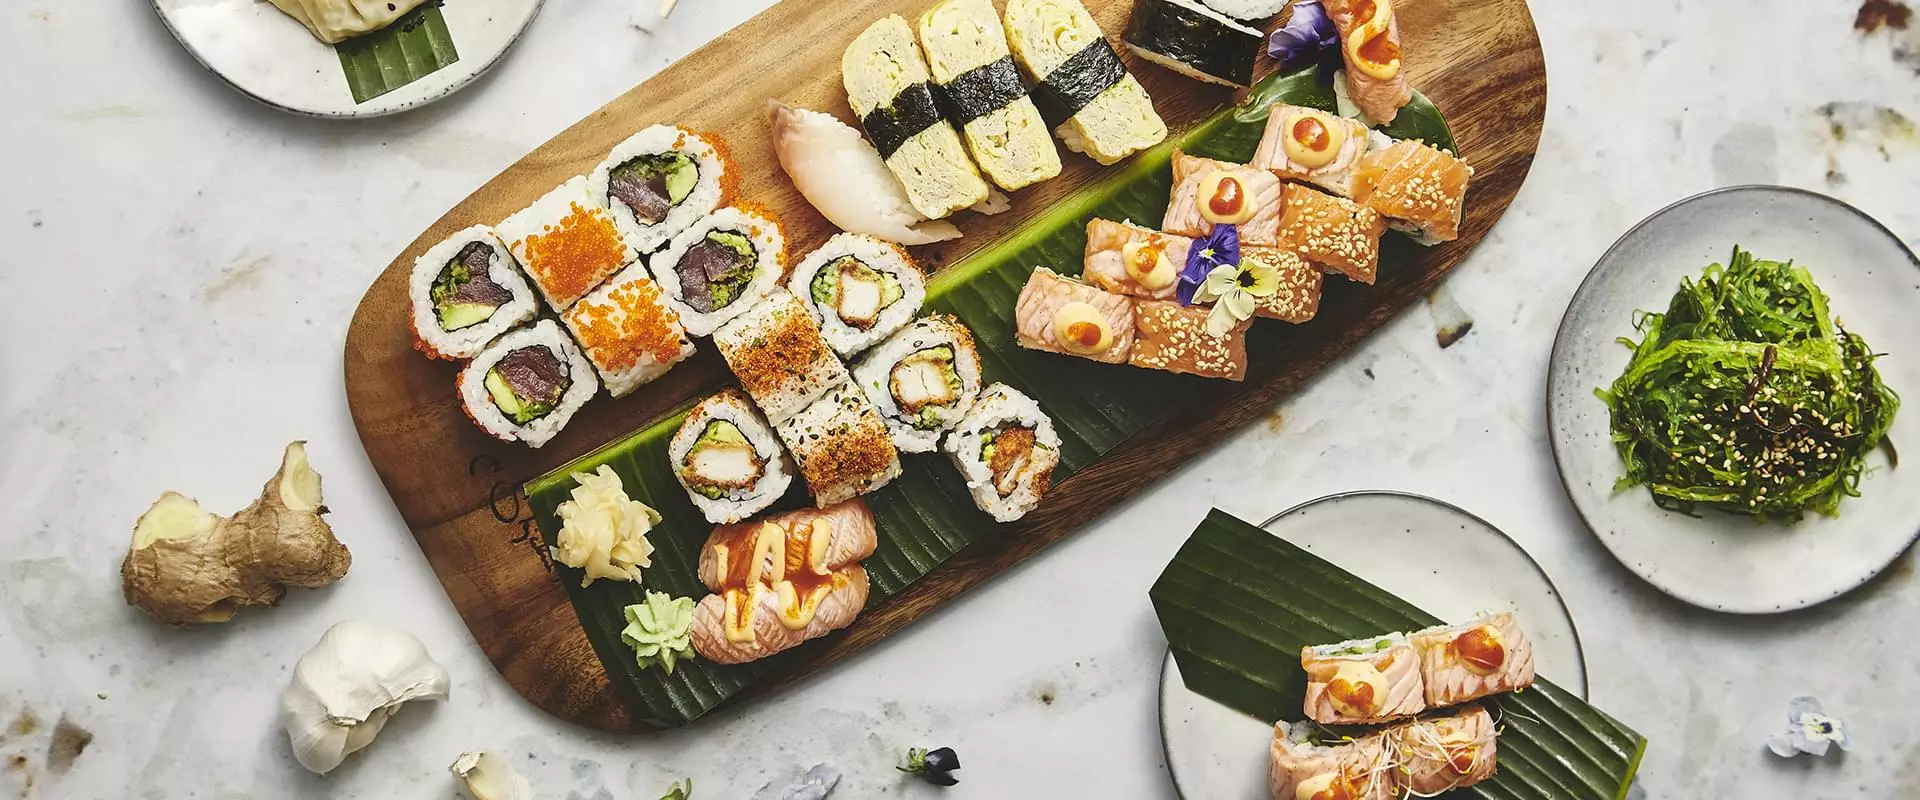 Selskab på sushirestaurant - Sushi på bambusblade og skærebræt